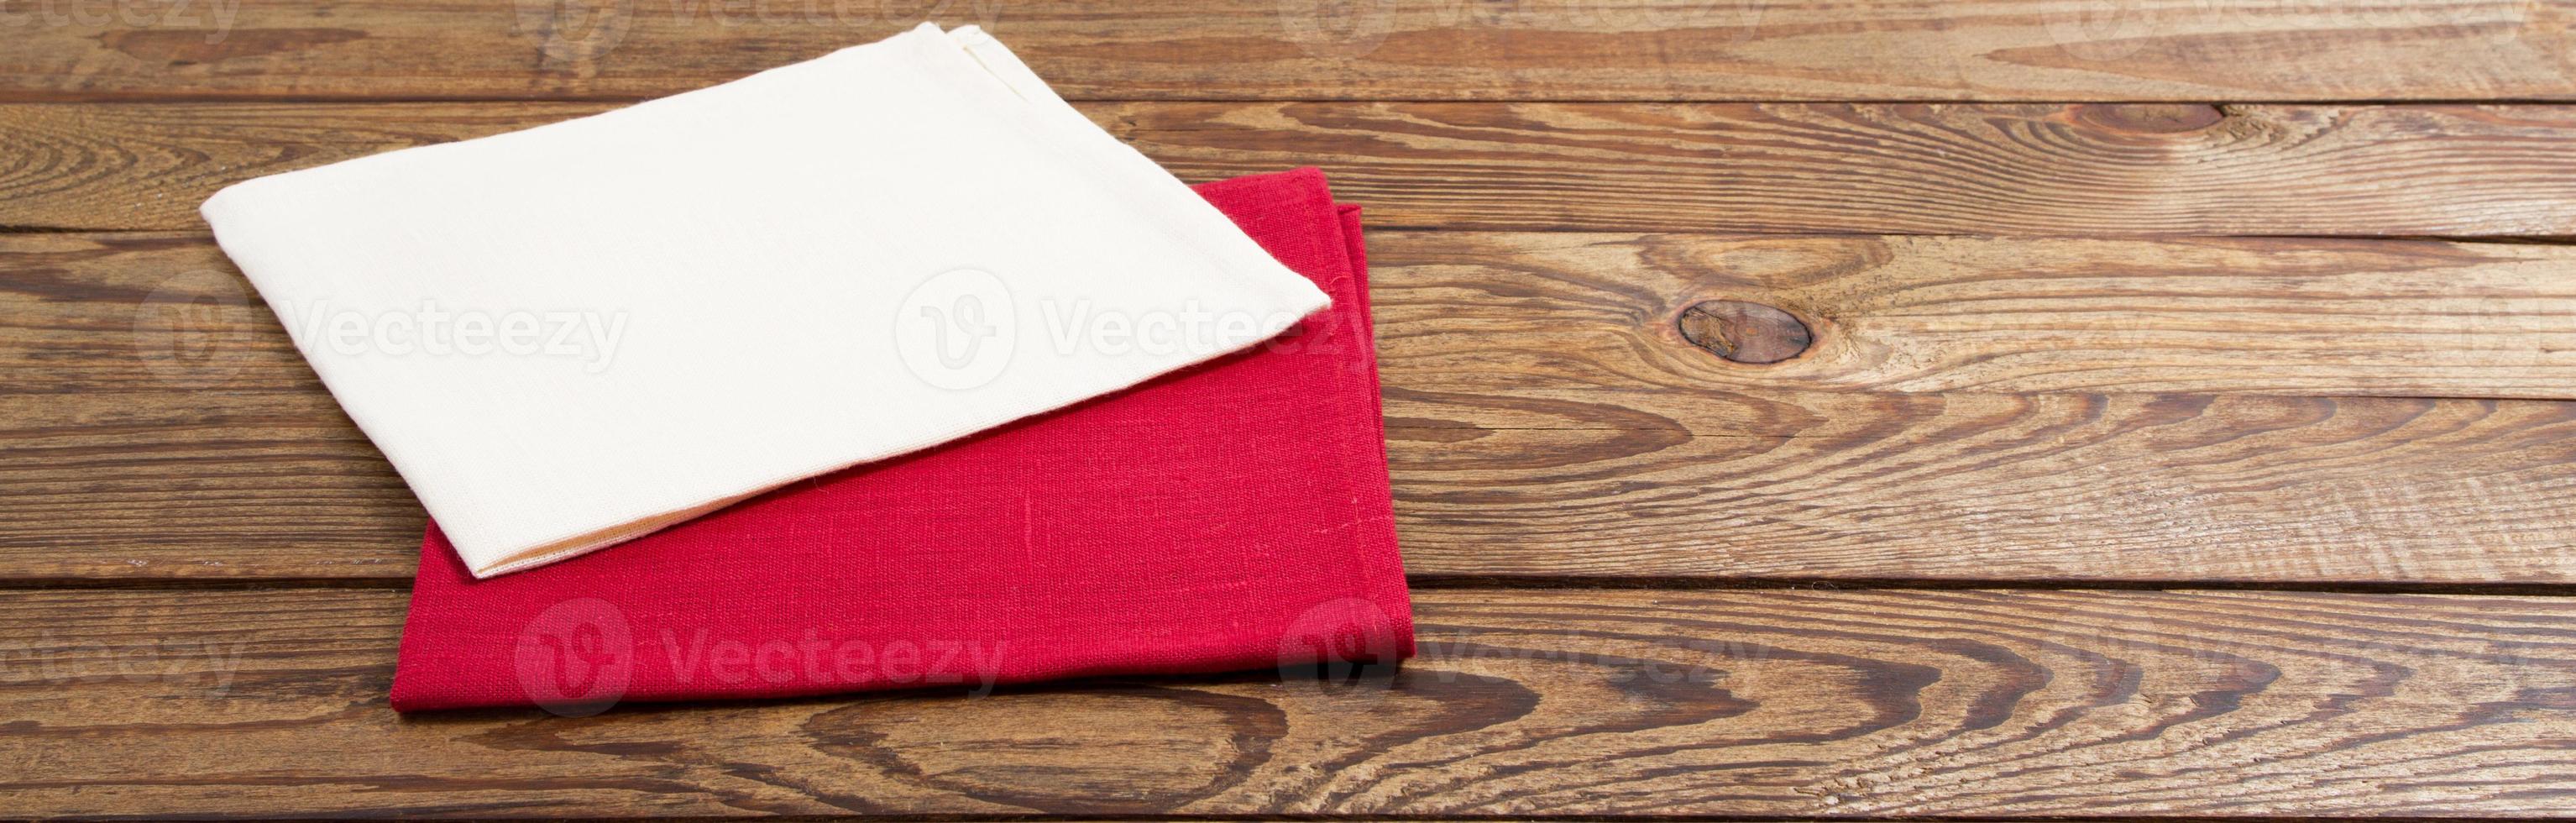 tovagliolo rosso e bianco su sfondo tavolo in legno - mock up, spazio copia foto